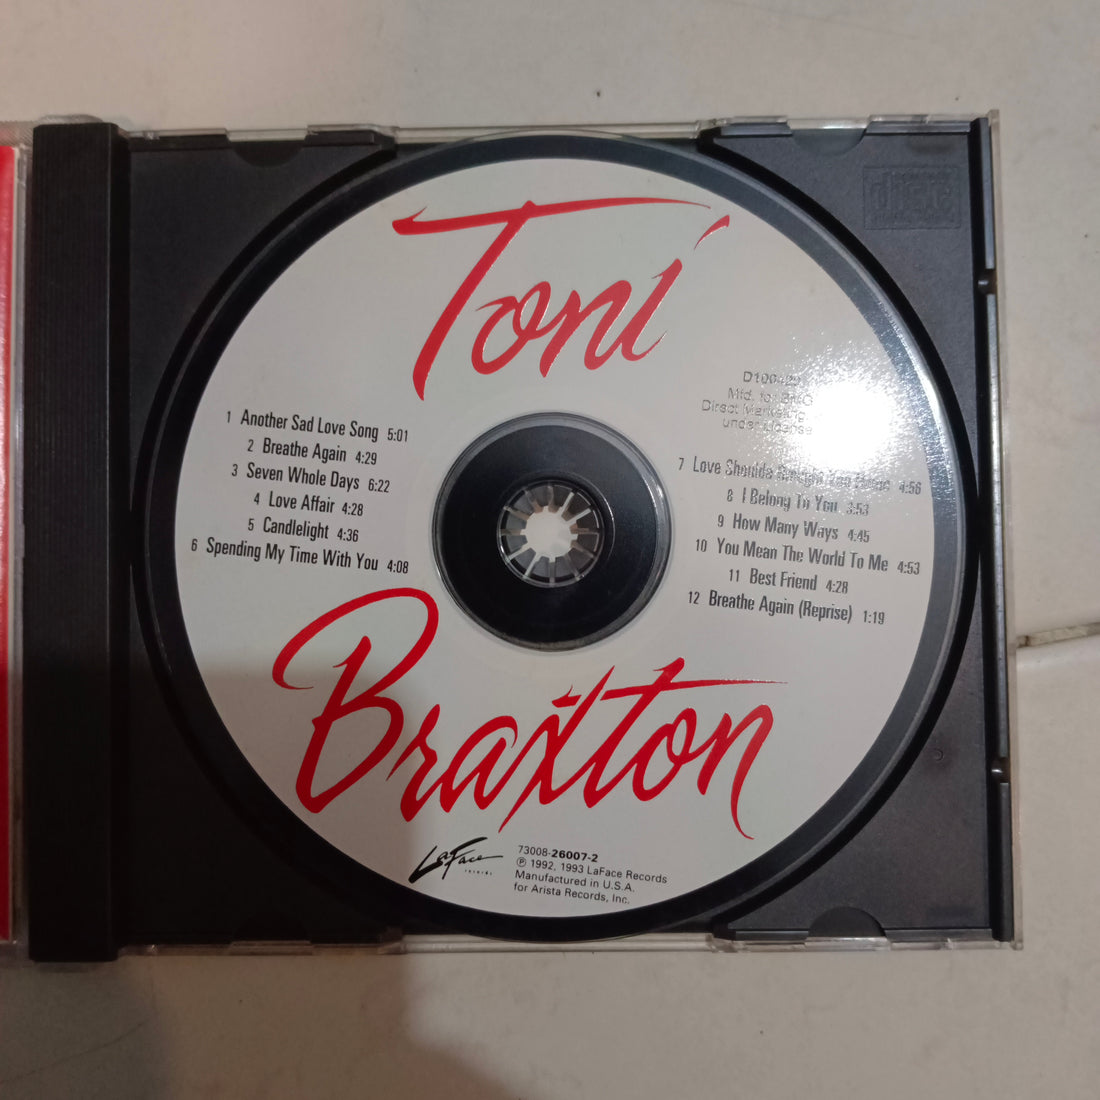 Toni Braxton - Toni Braxton (CD) (VG+)